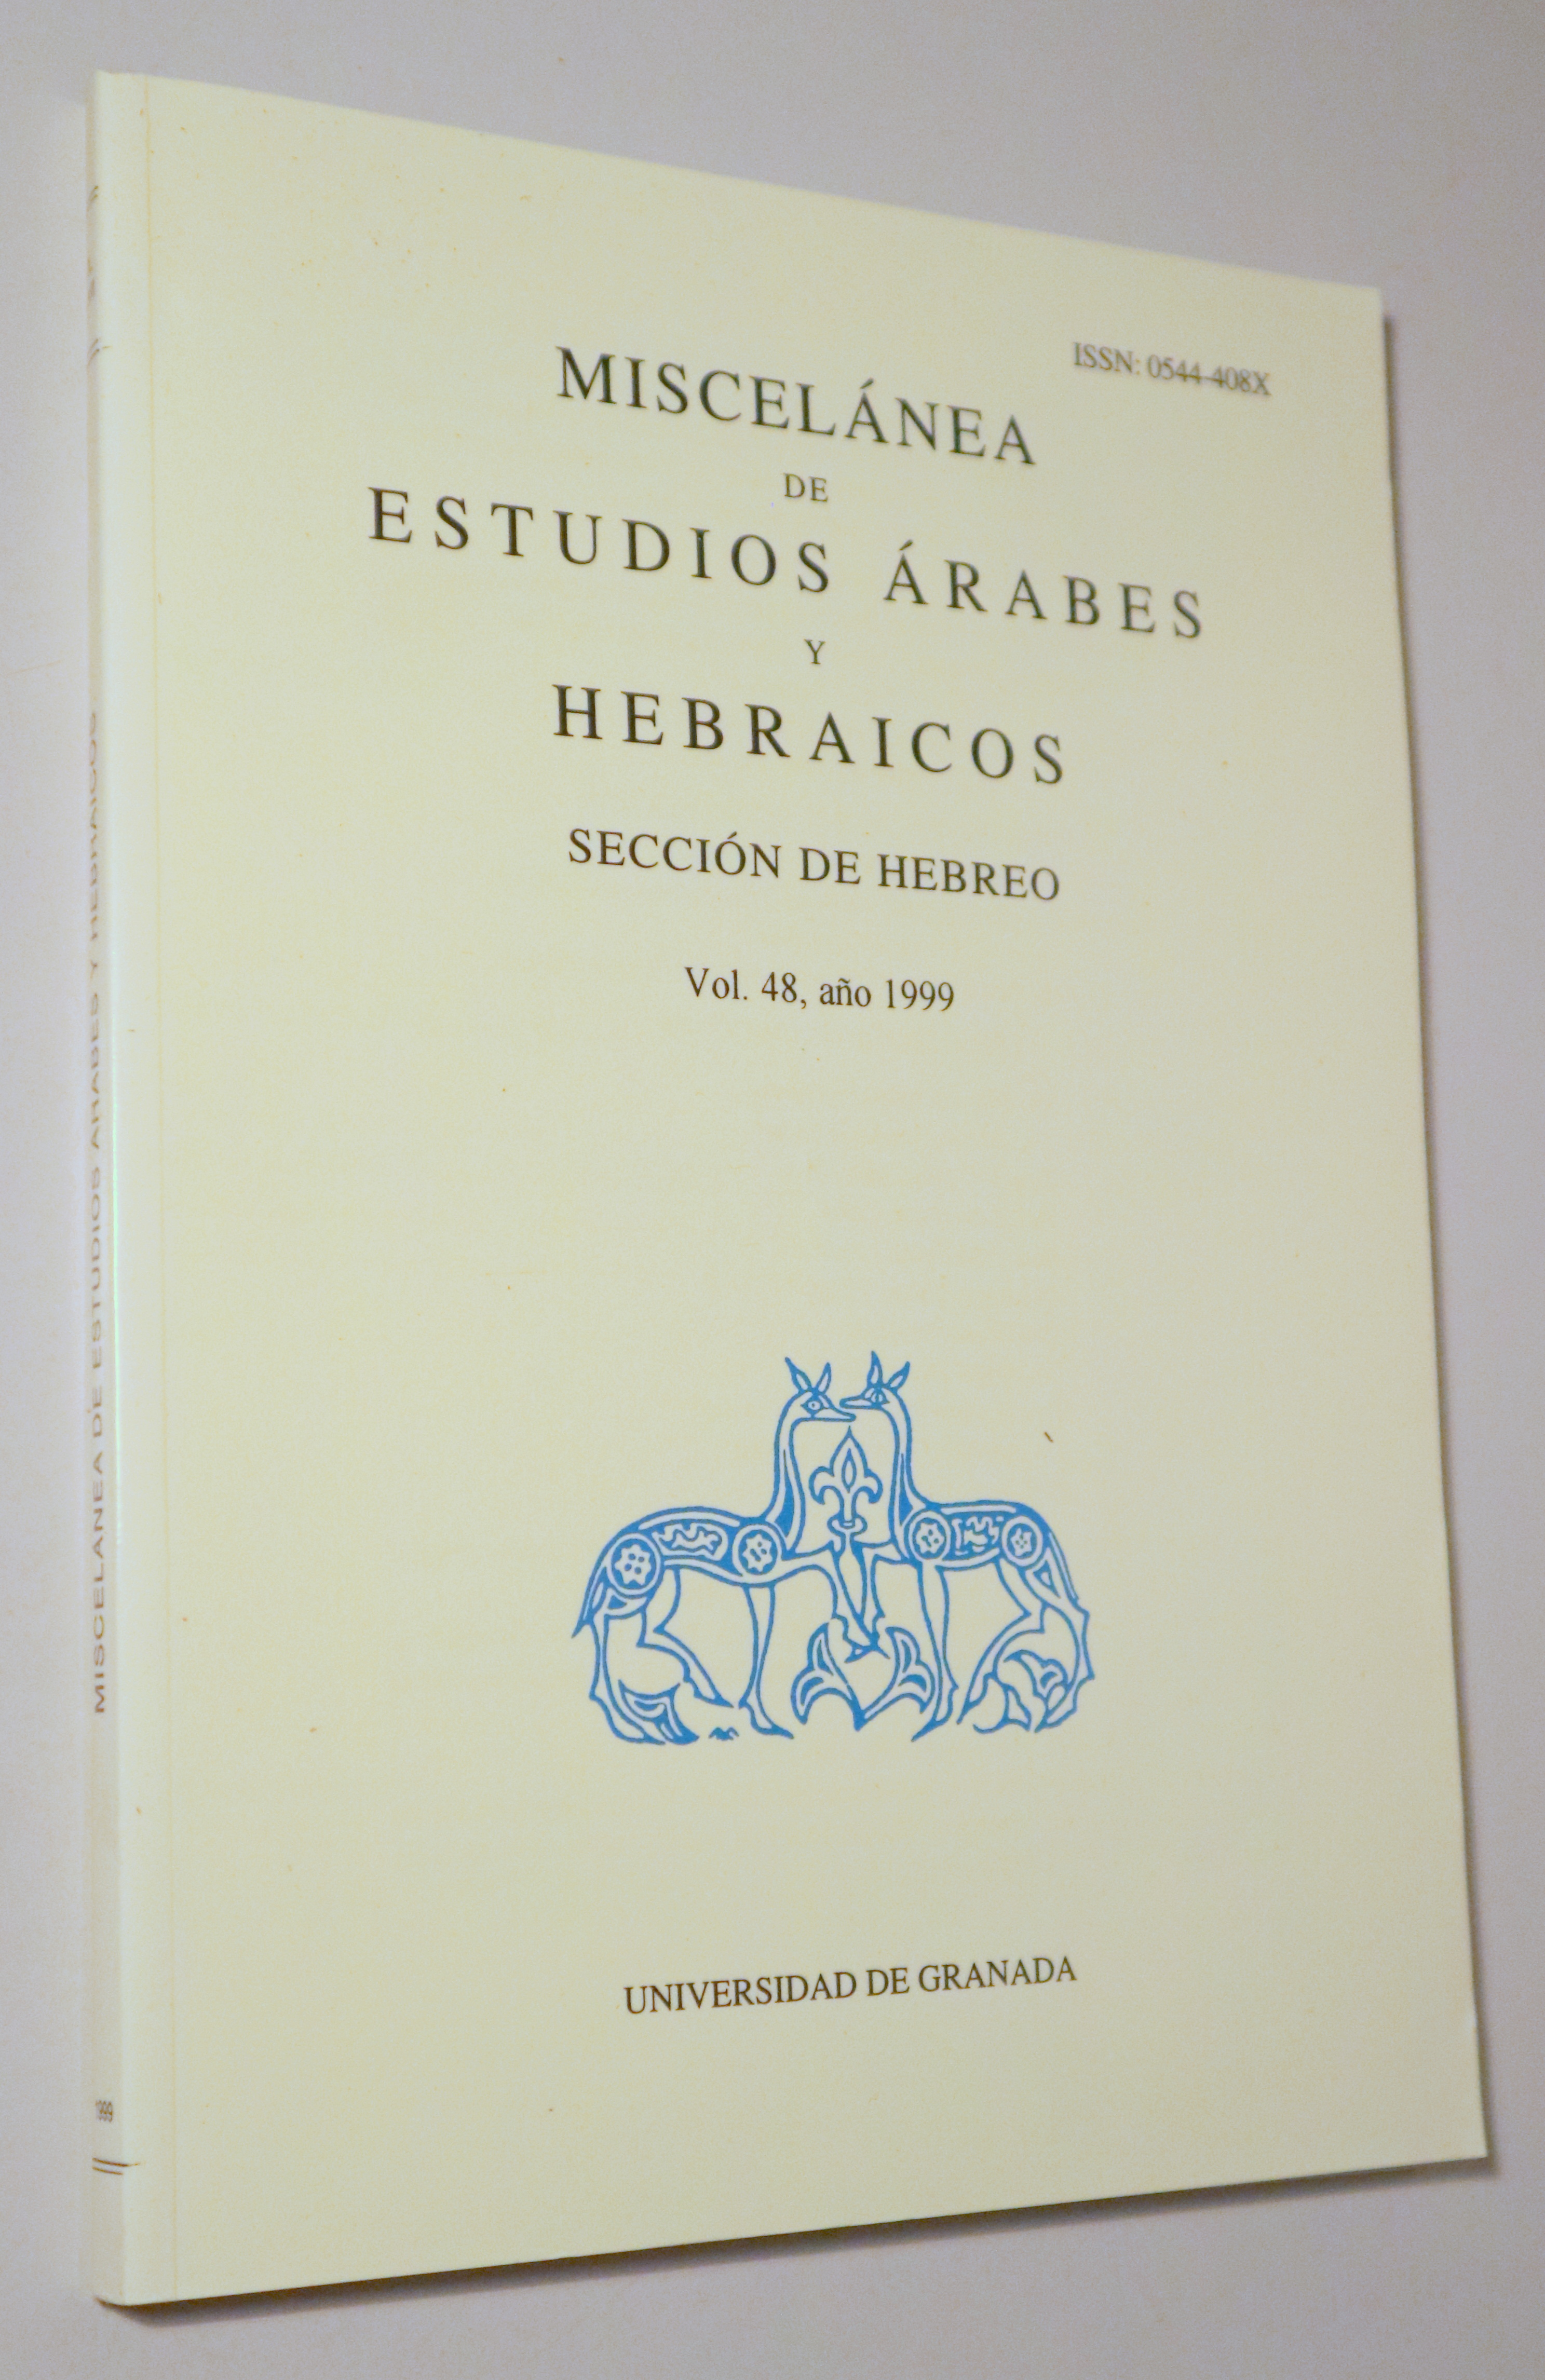 MISCELÁNEA DE ESTUDIOS ÁRABES Y HEBRAICOS. Sección de hebreo, vol. 48, año 1999 - Granada 1999